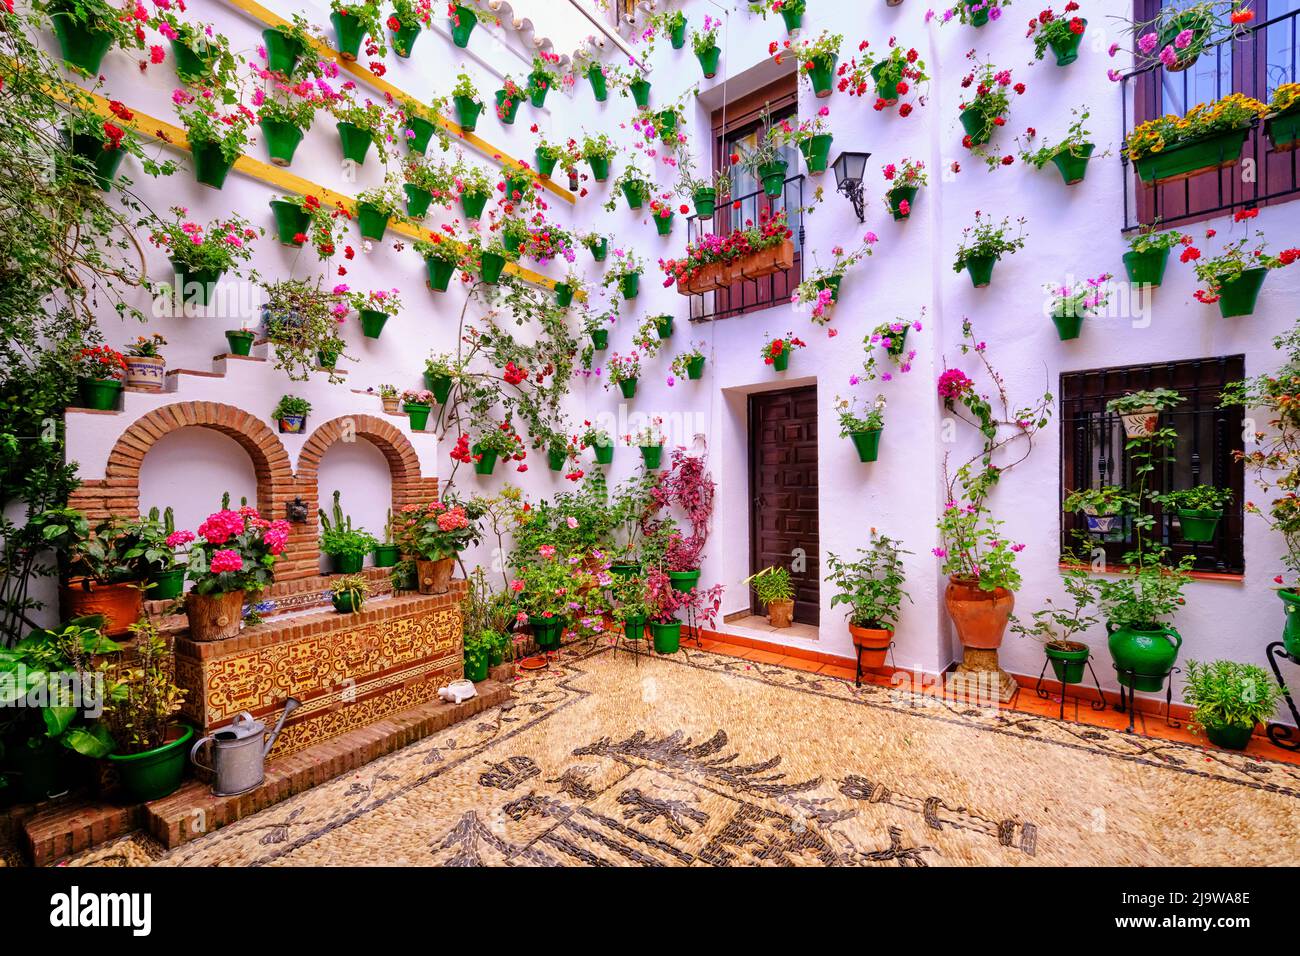 Un patio traditionnel de Cordoue, une cour pleine de fleurs et de fraîcheur. Patrimoine culturel immatériel de l'humanité de l'UNESCO. Andalousie, Espagne Banque D'Images